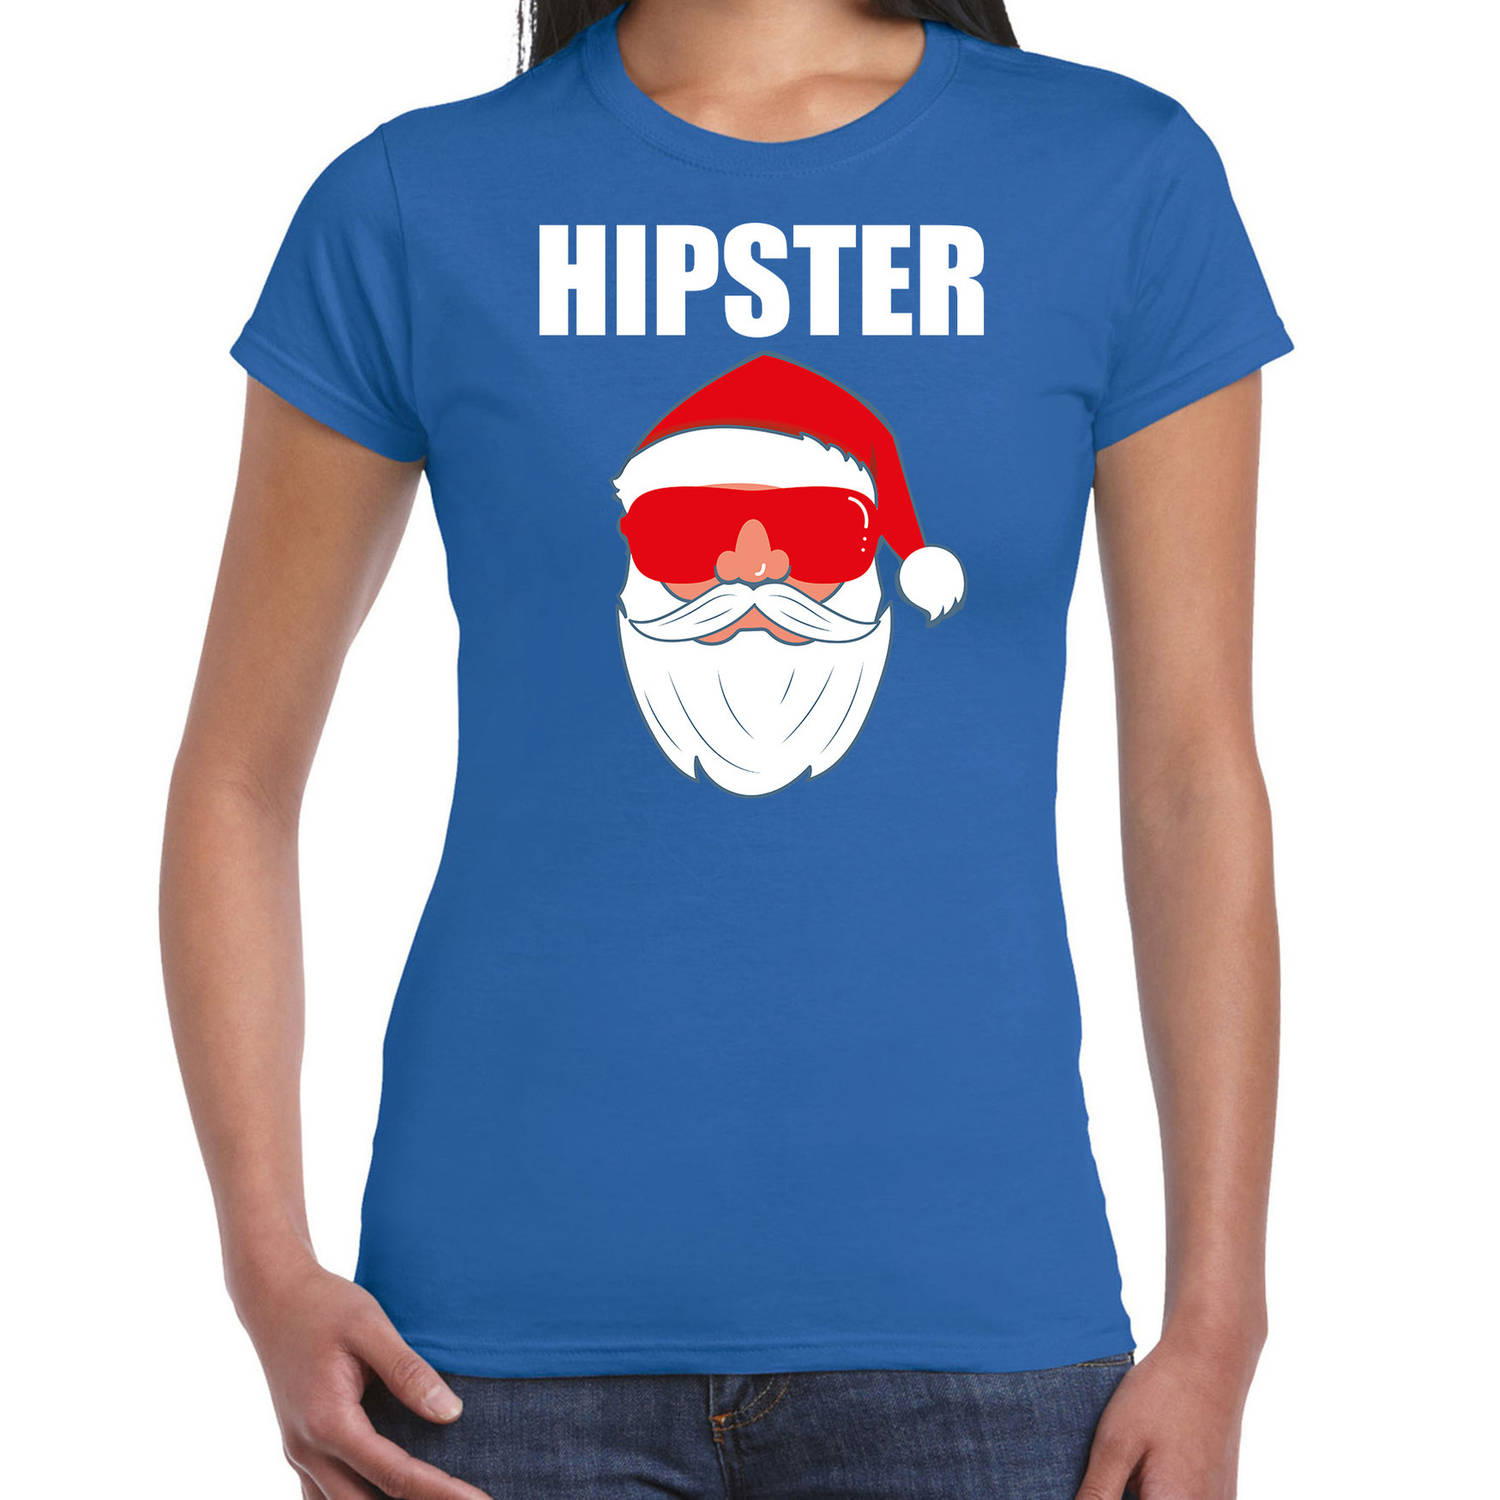 Blauw Kerstshirt / Kerstkleding Hipster voor dames met Kerstman met zonnebril M - kerst t-shirts